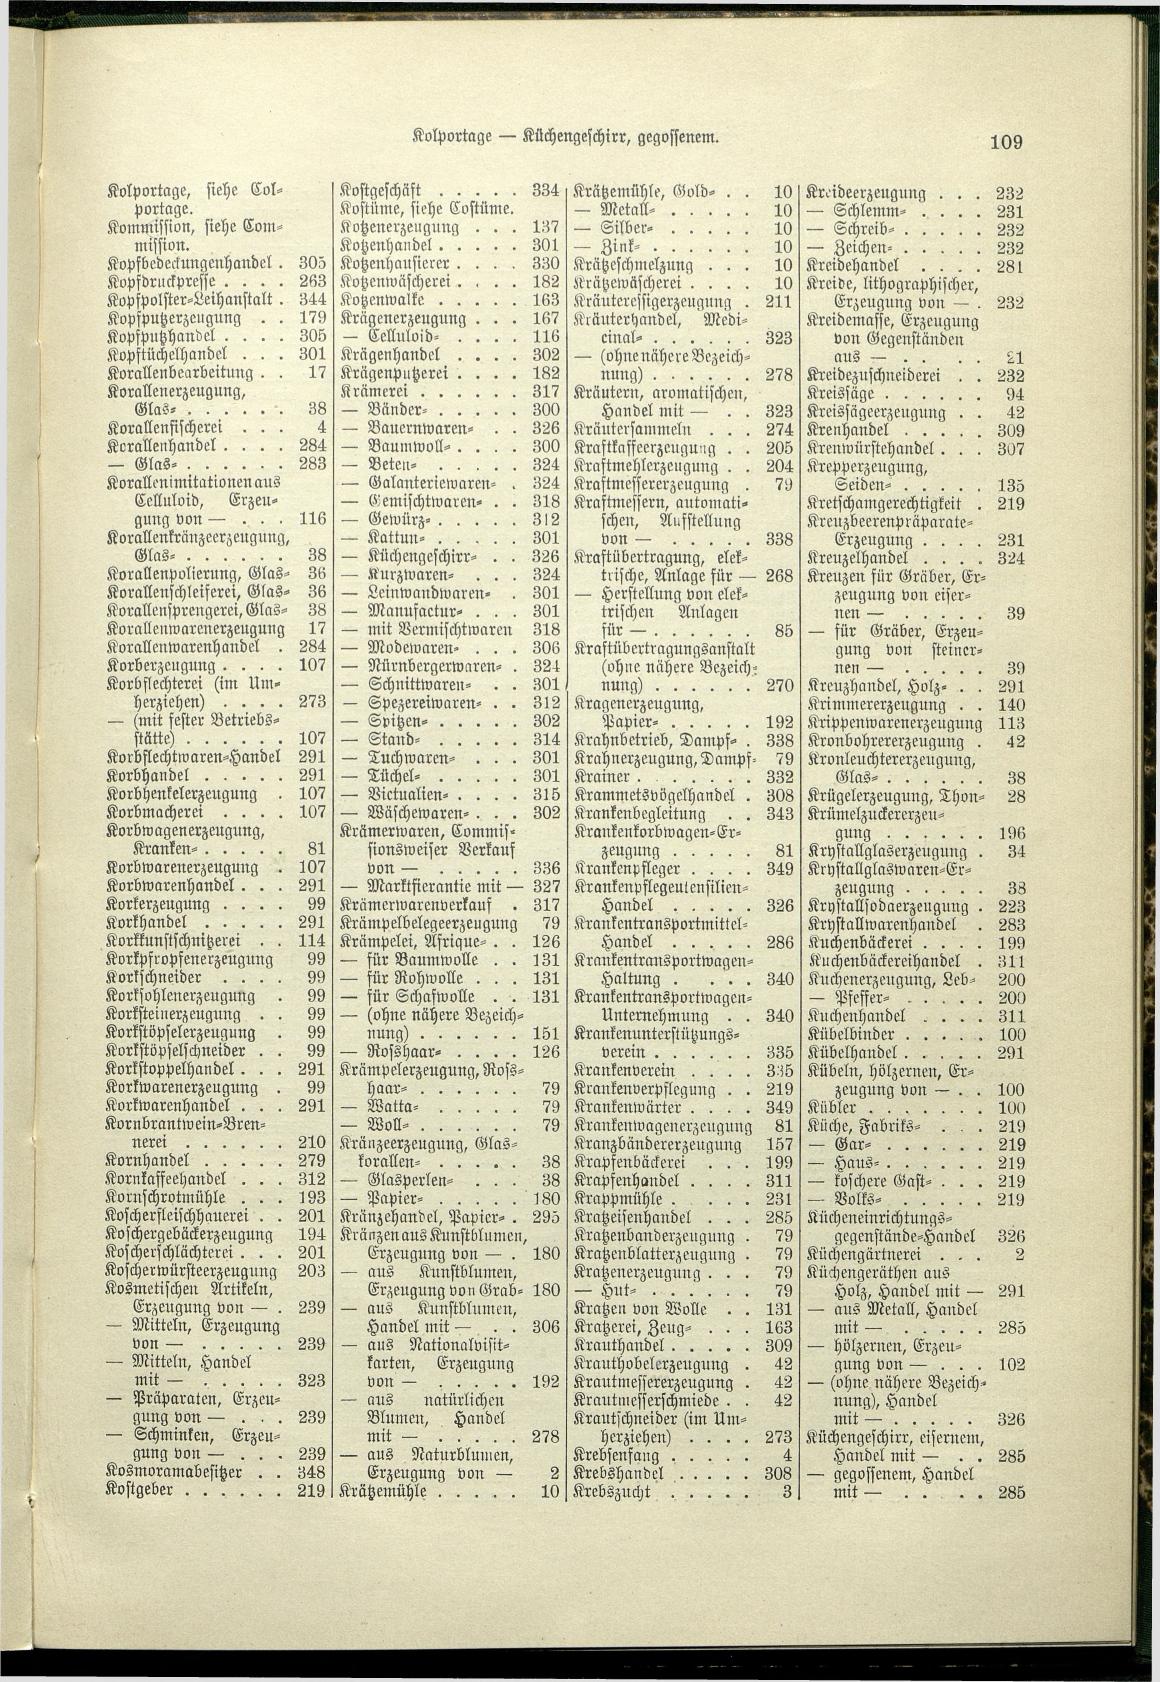 Verzeichnis der Gewerbe der im Reichsrathe vertretenen Königreiche und Länder 1900 - Seite 113